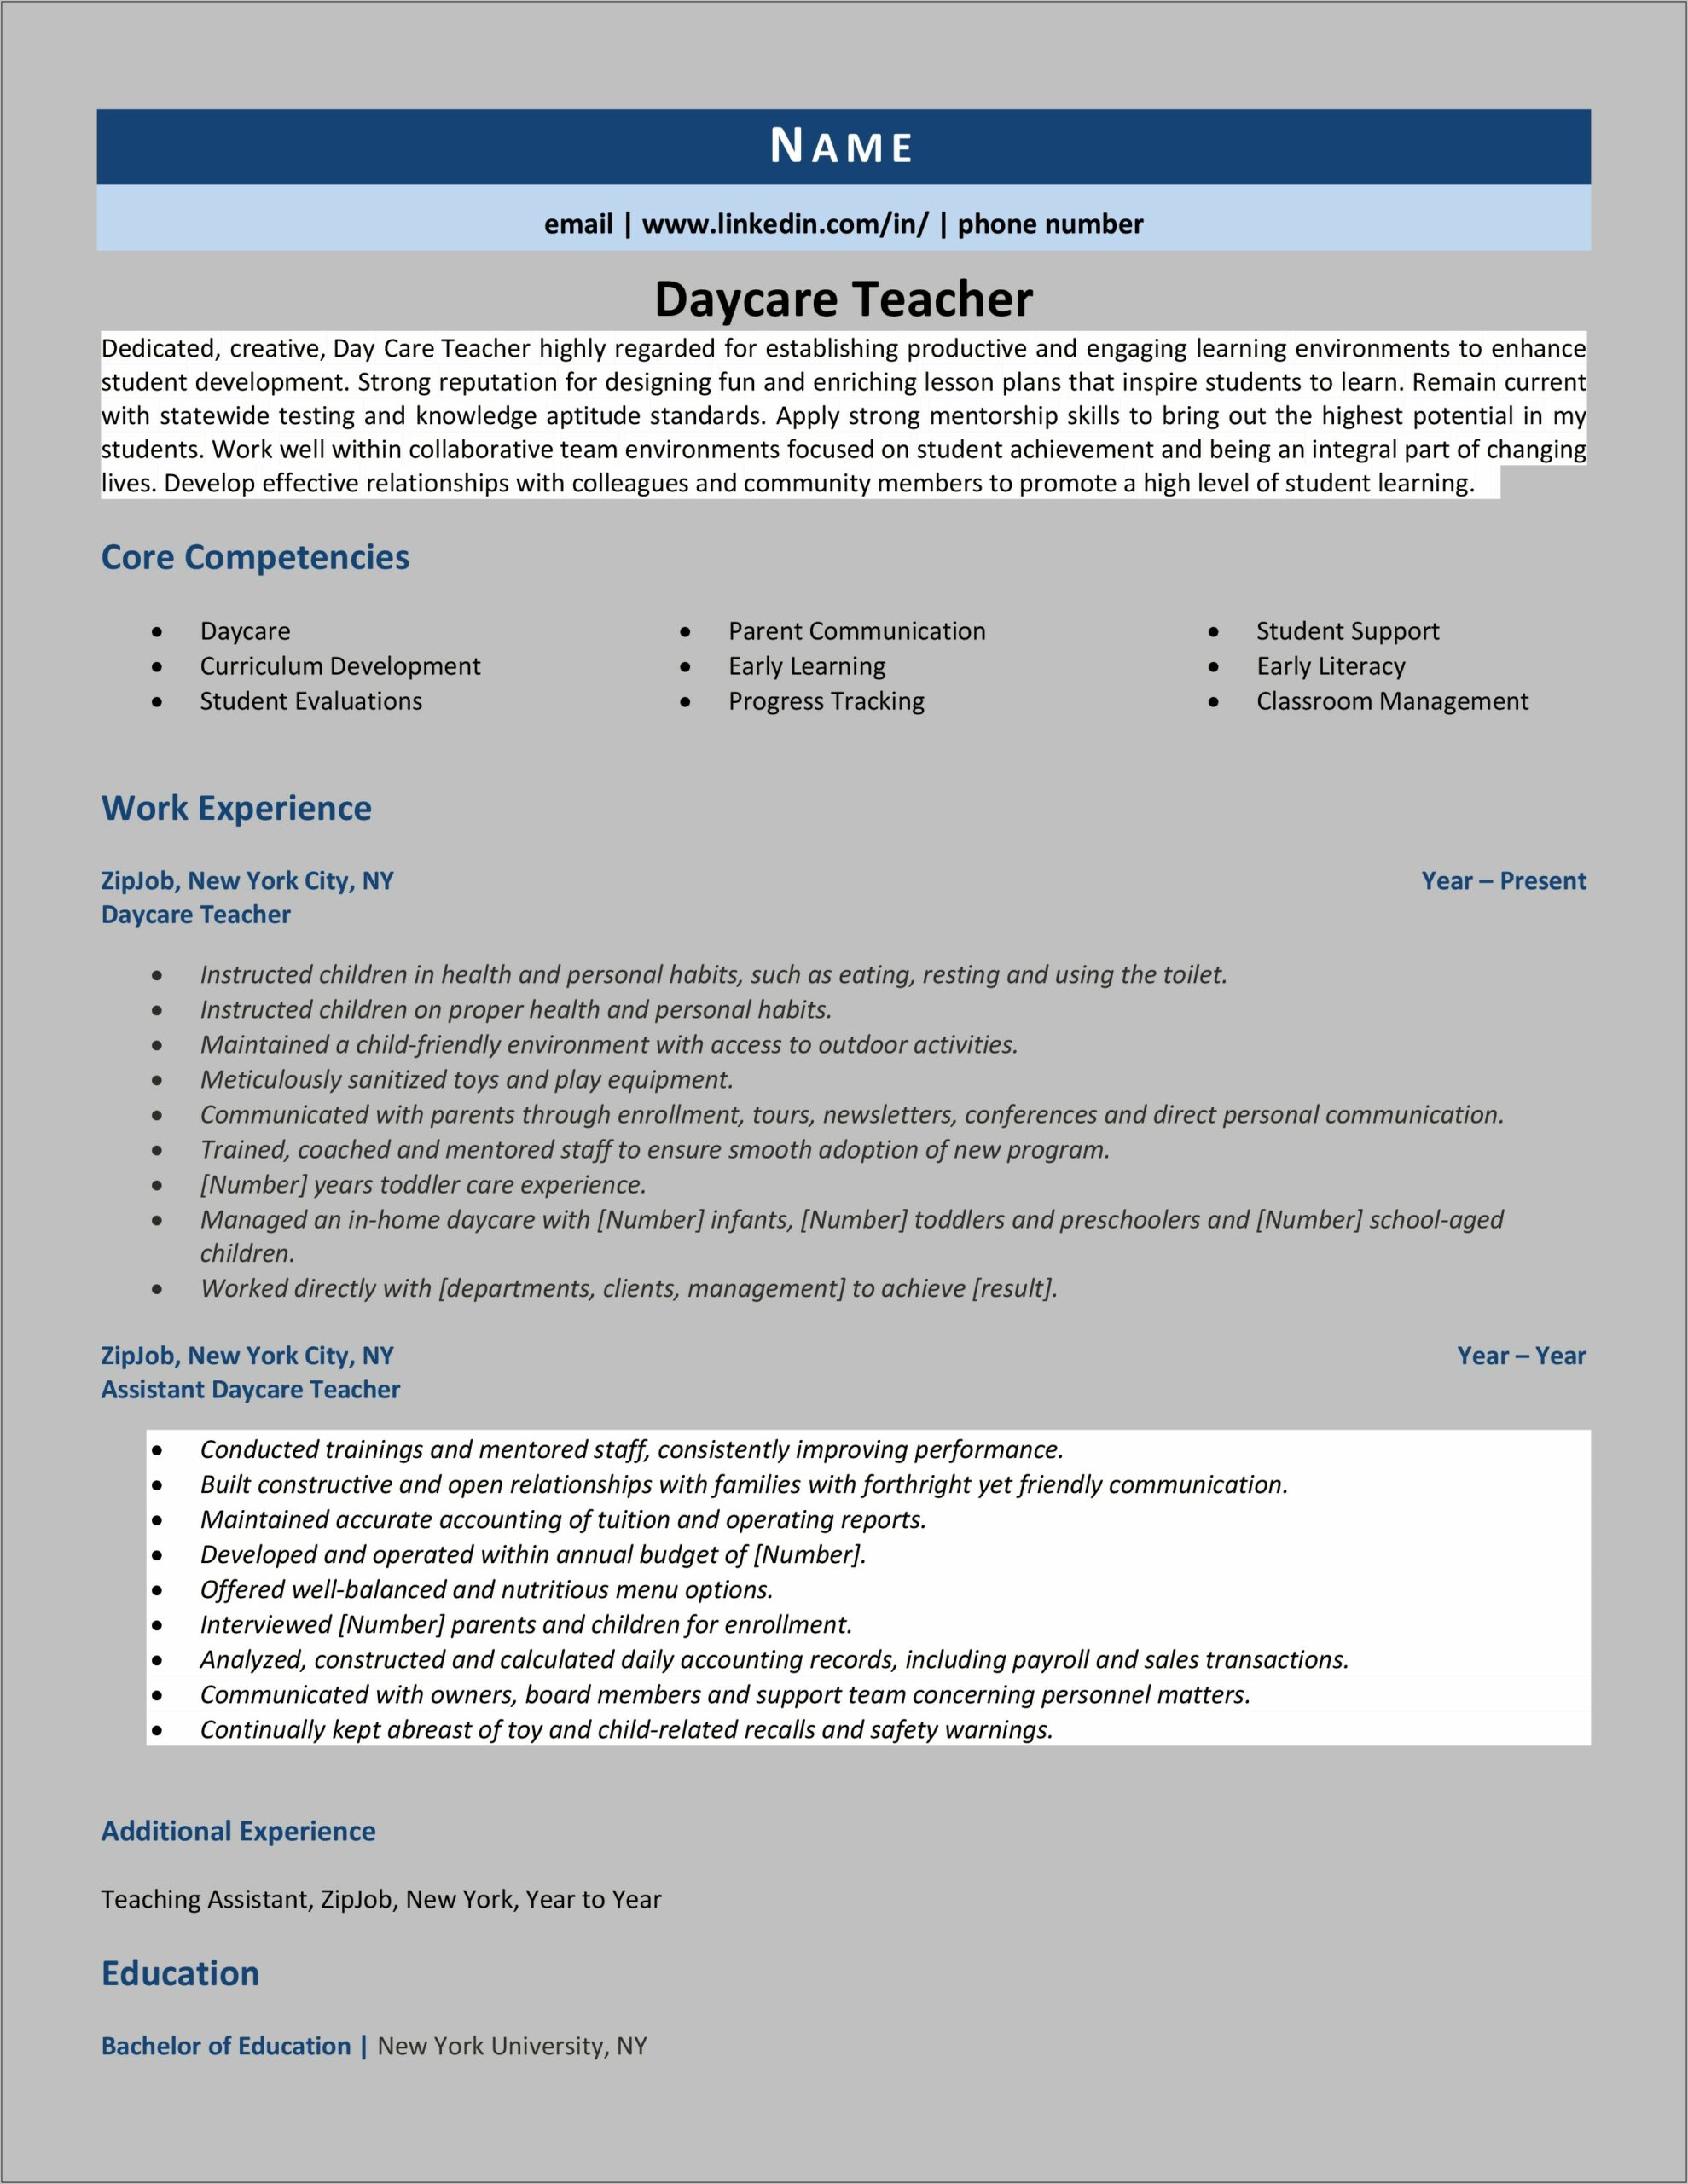 Resume Sample For Day Care Teacher